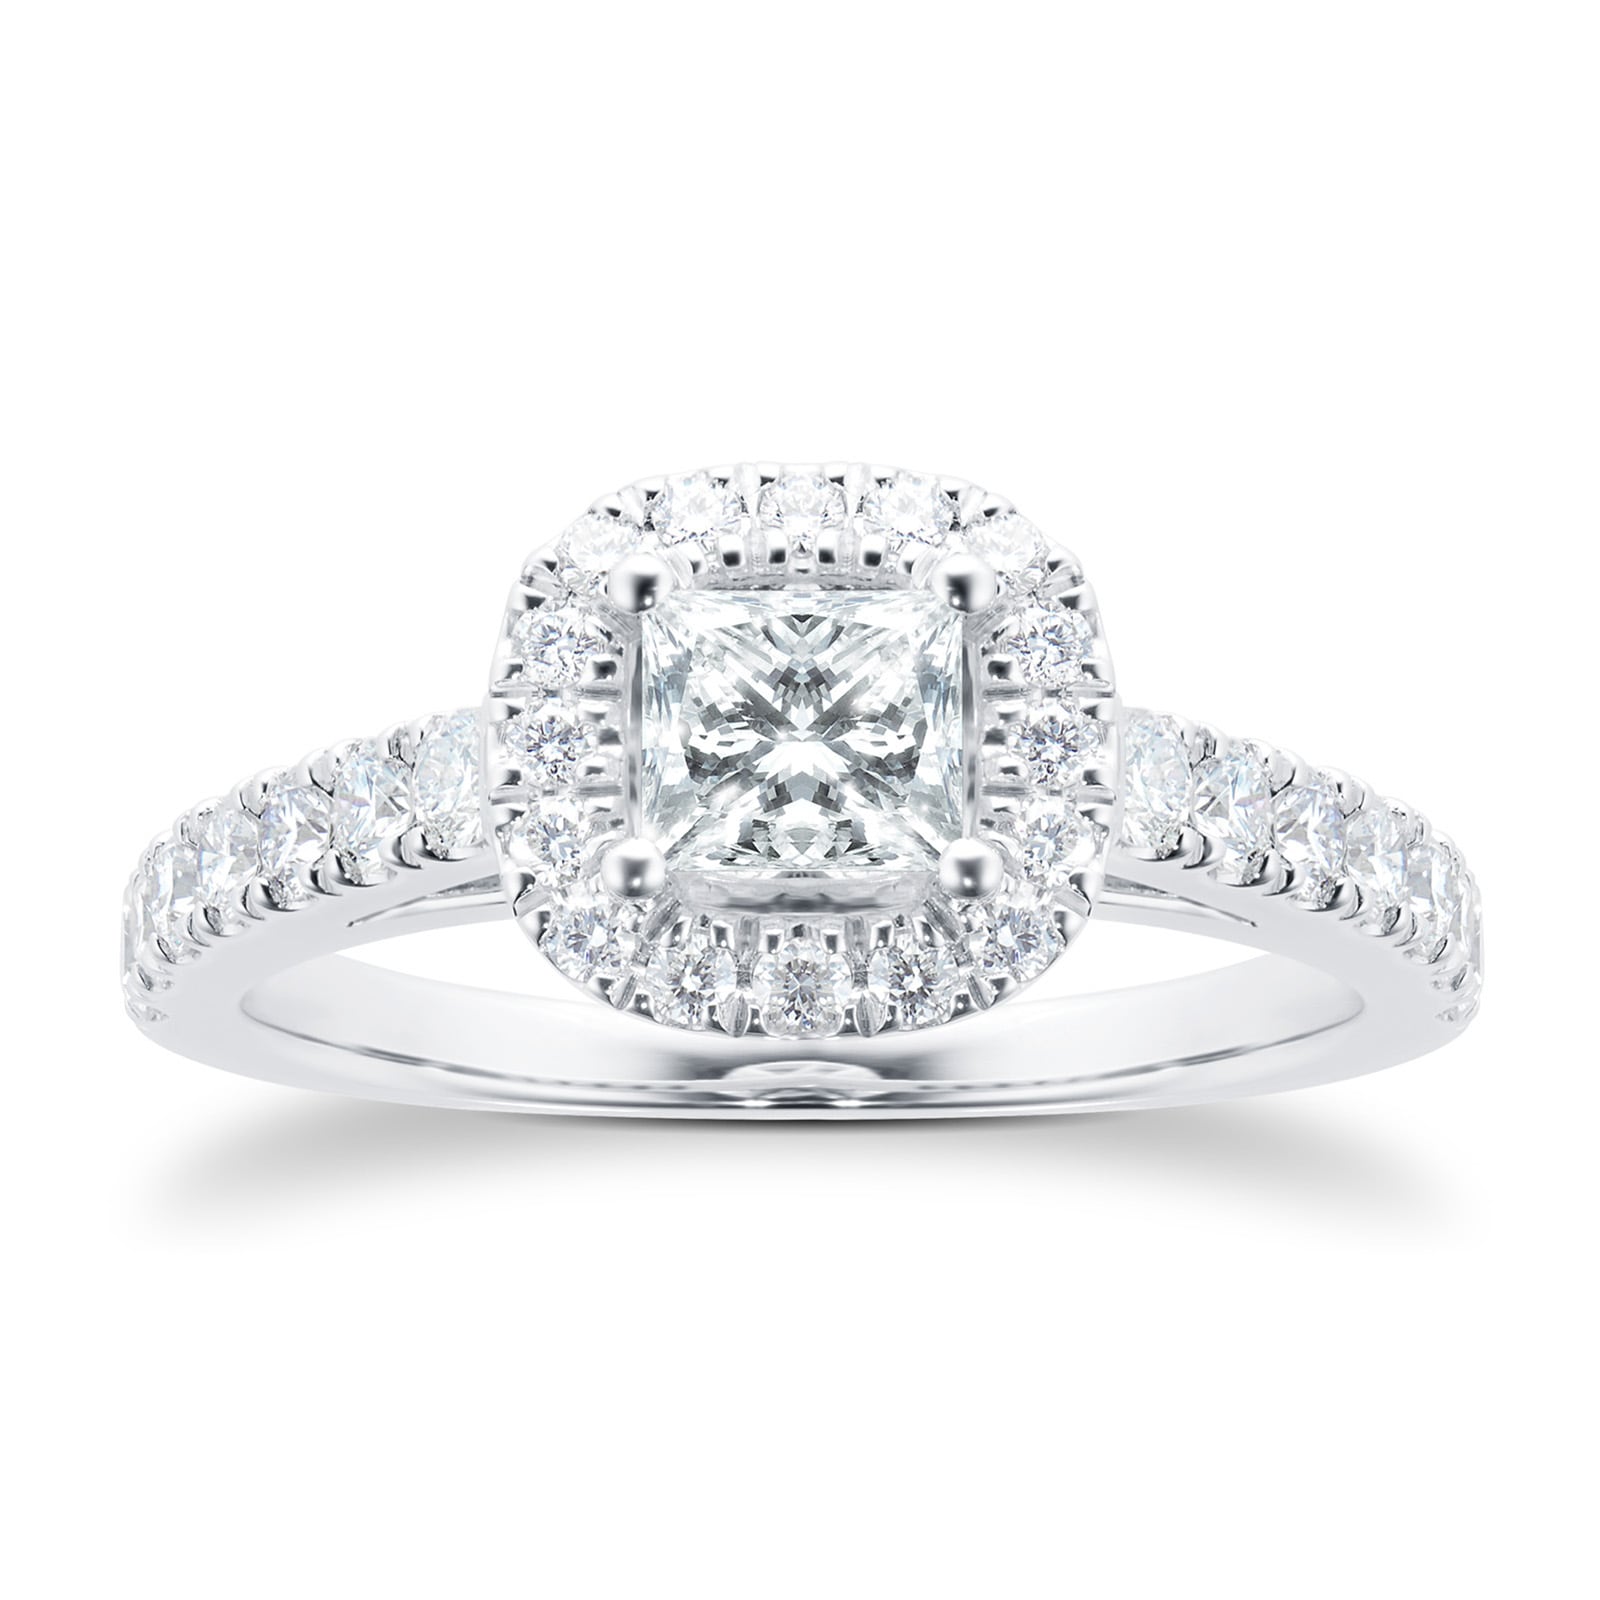 18ct White Gold Princess Cut 1.00 Carat 88 Facet Diamond Ring - Ring Size Q